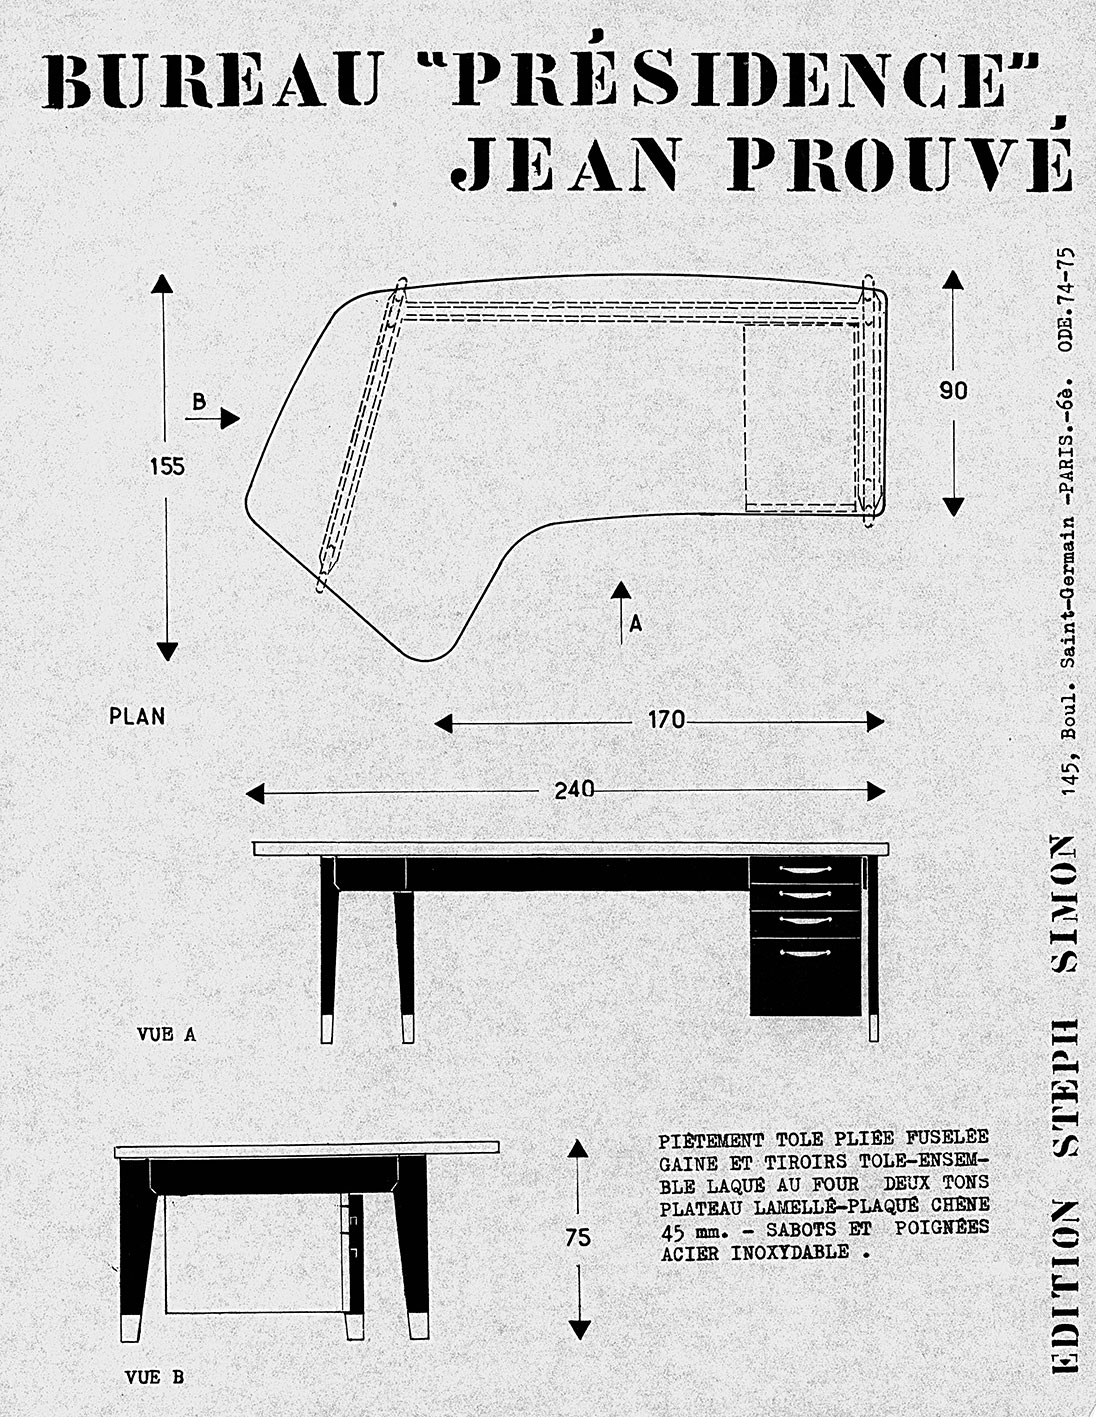 « Bureau Présidence Jean Prouvé ». Fiche de présentation Steph Simon, c. 1957.